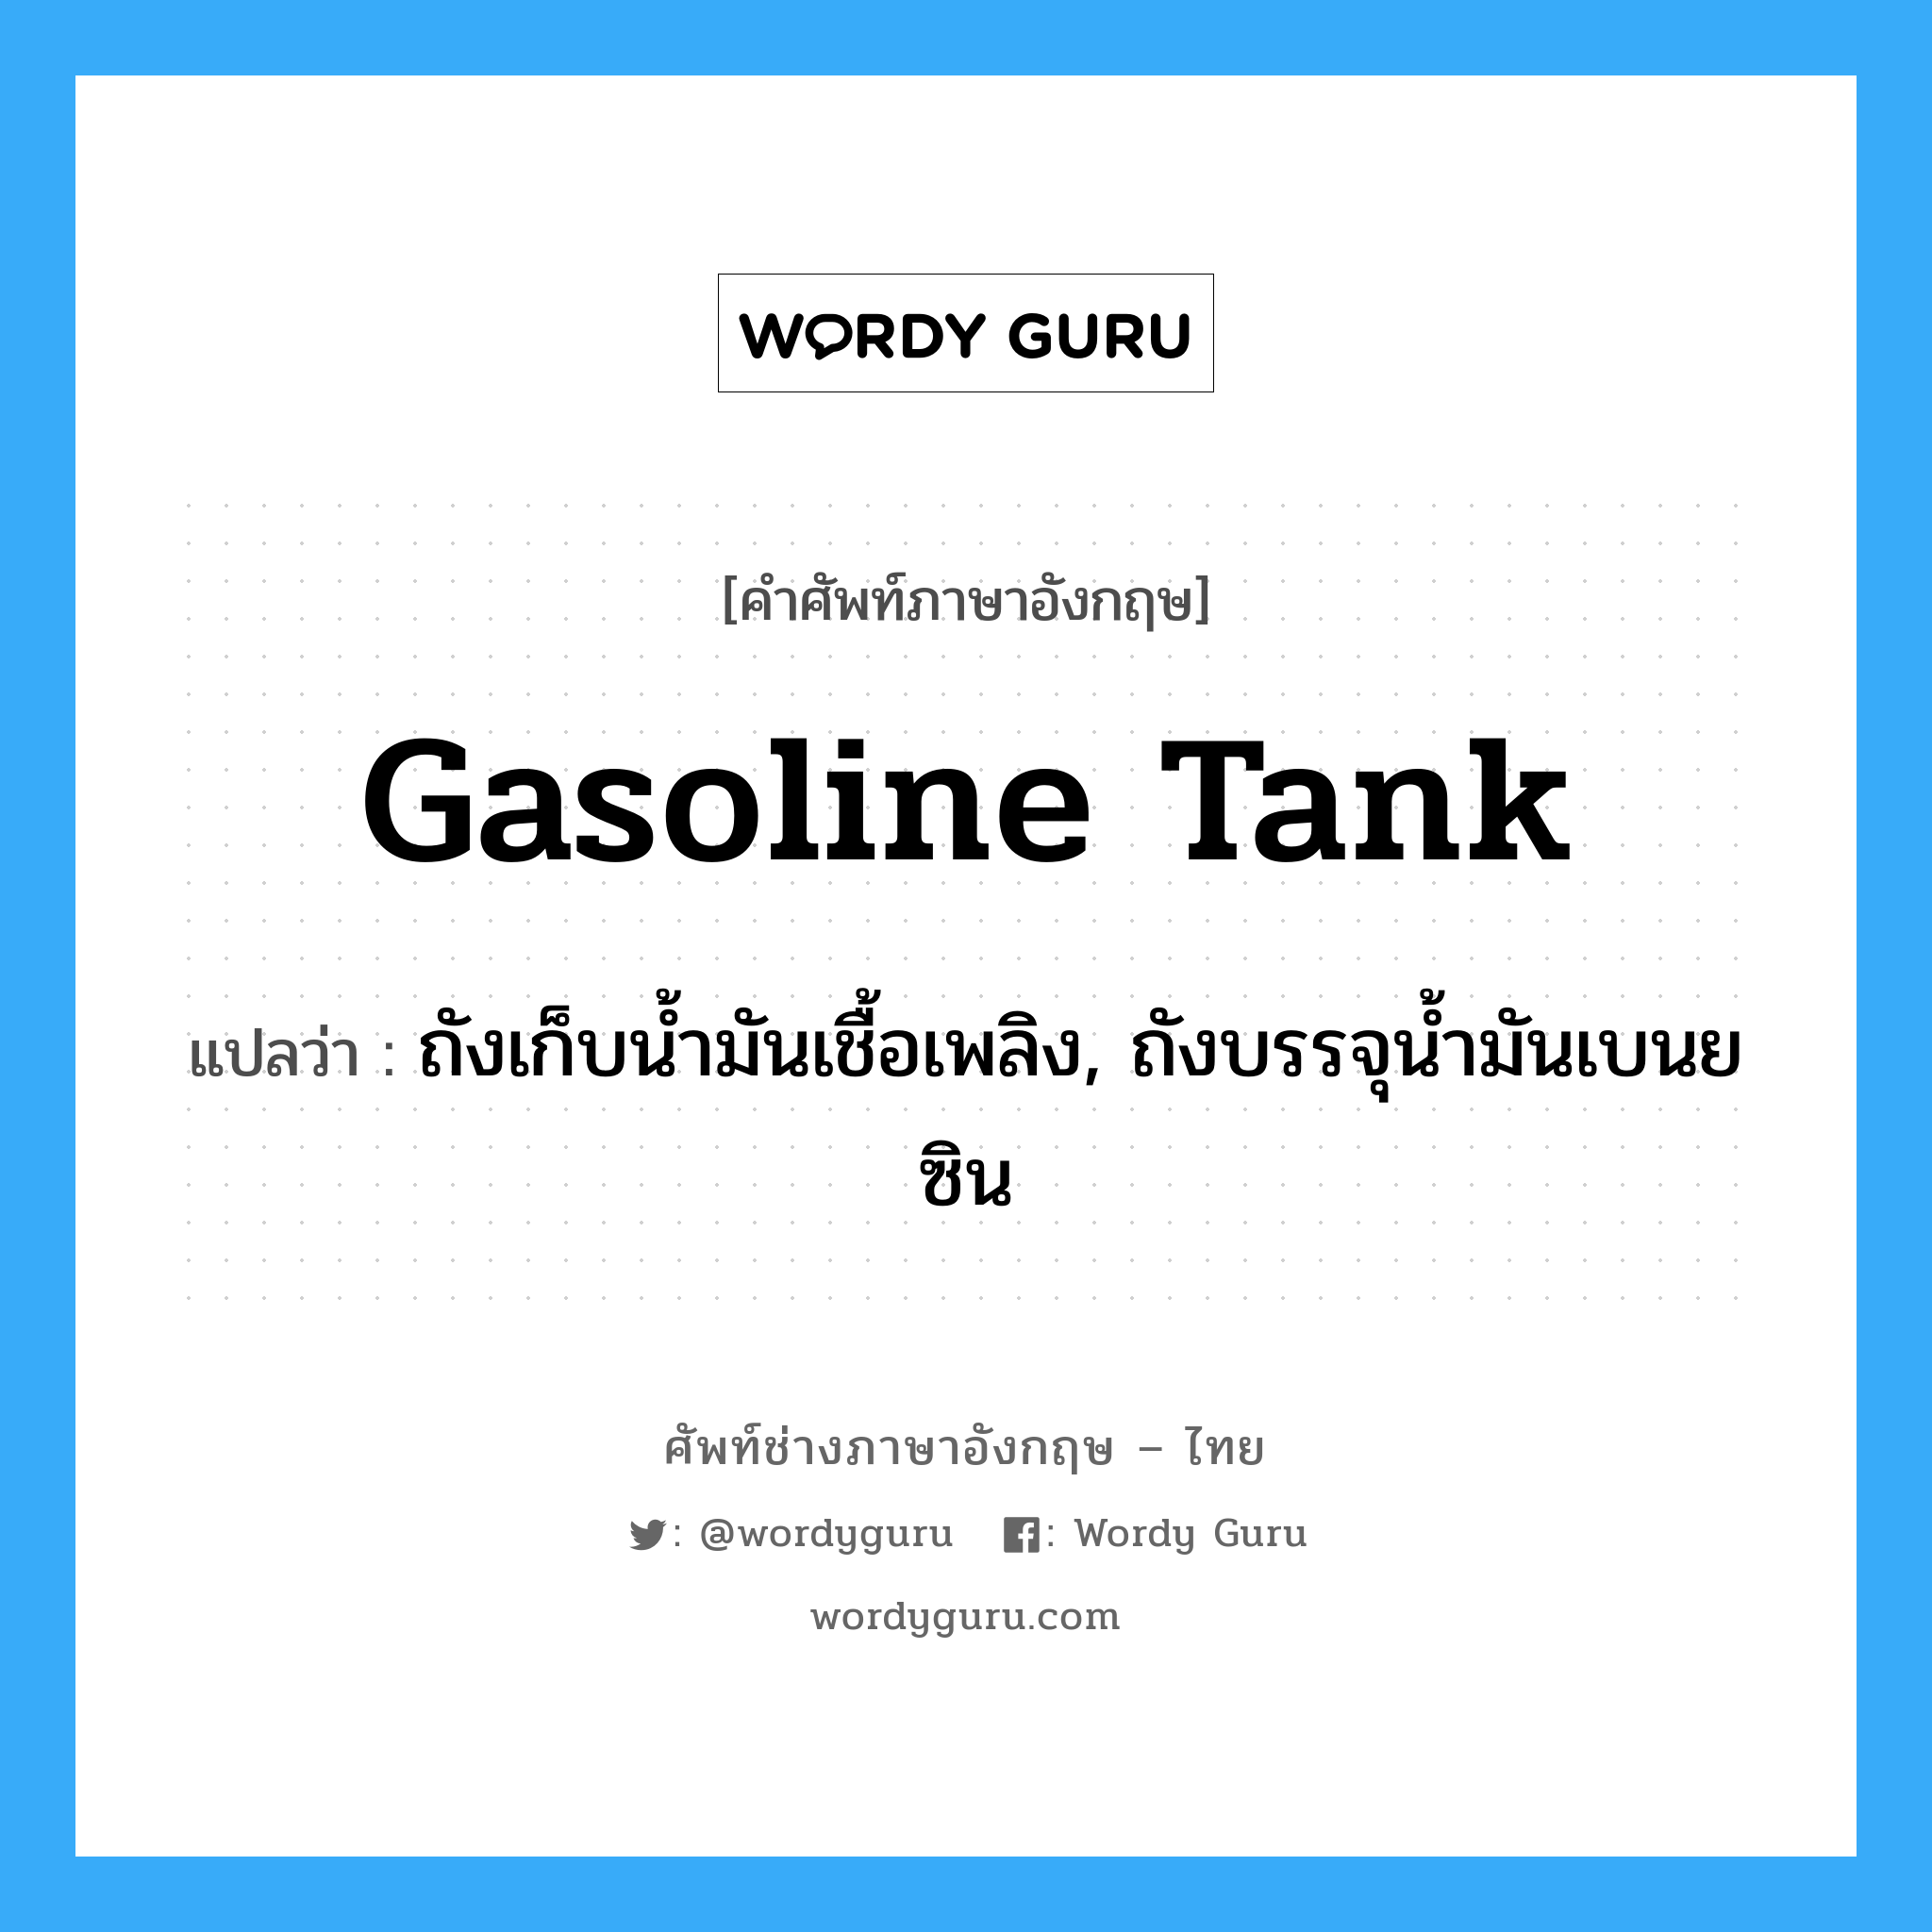 gasoline tank แปลว่า?, คำศัพท์ช่างภาษาอังกฤษ - ไทย gasoline tank คำศัพท์ภาษาอังกฤษ gasoline tank แปลว่า ถังเก็บน้ำมันเชื้อเพลิง, ถังบรรจุน้ำมันเบนยซิน